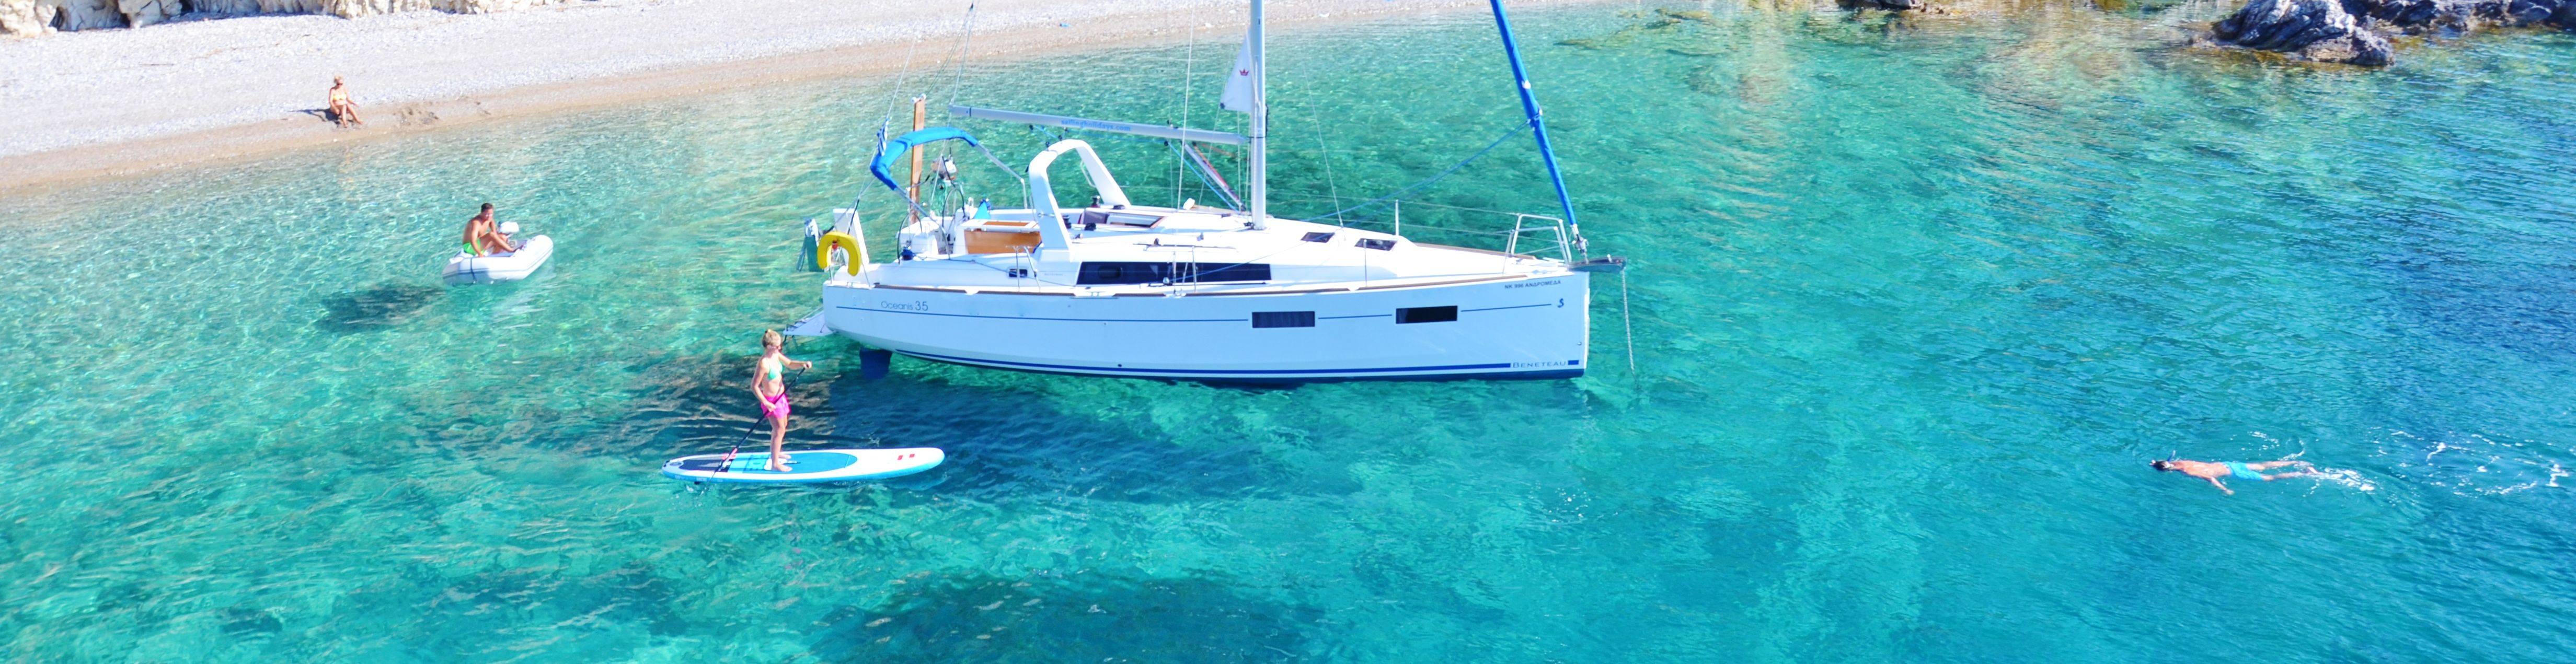 catamaran flotilla holidays greece